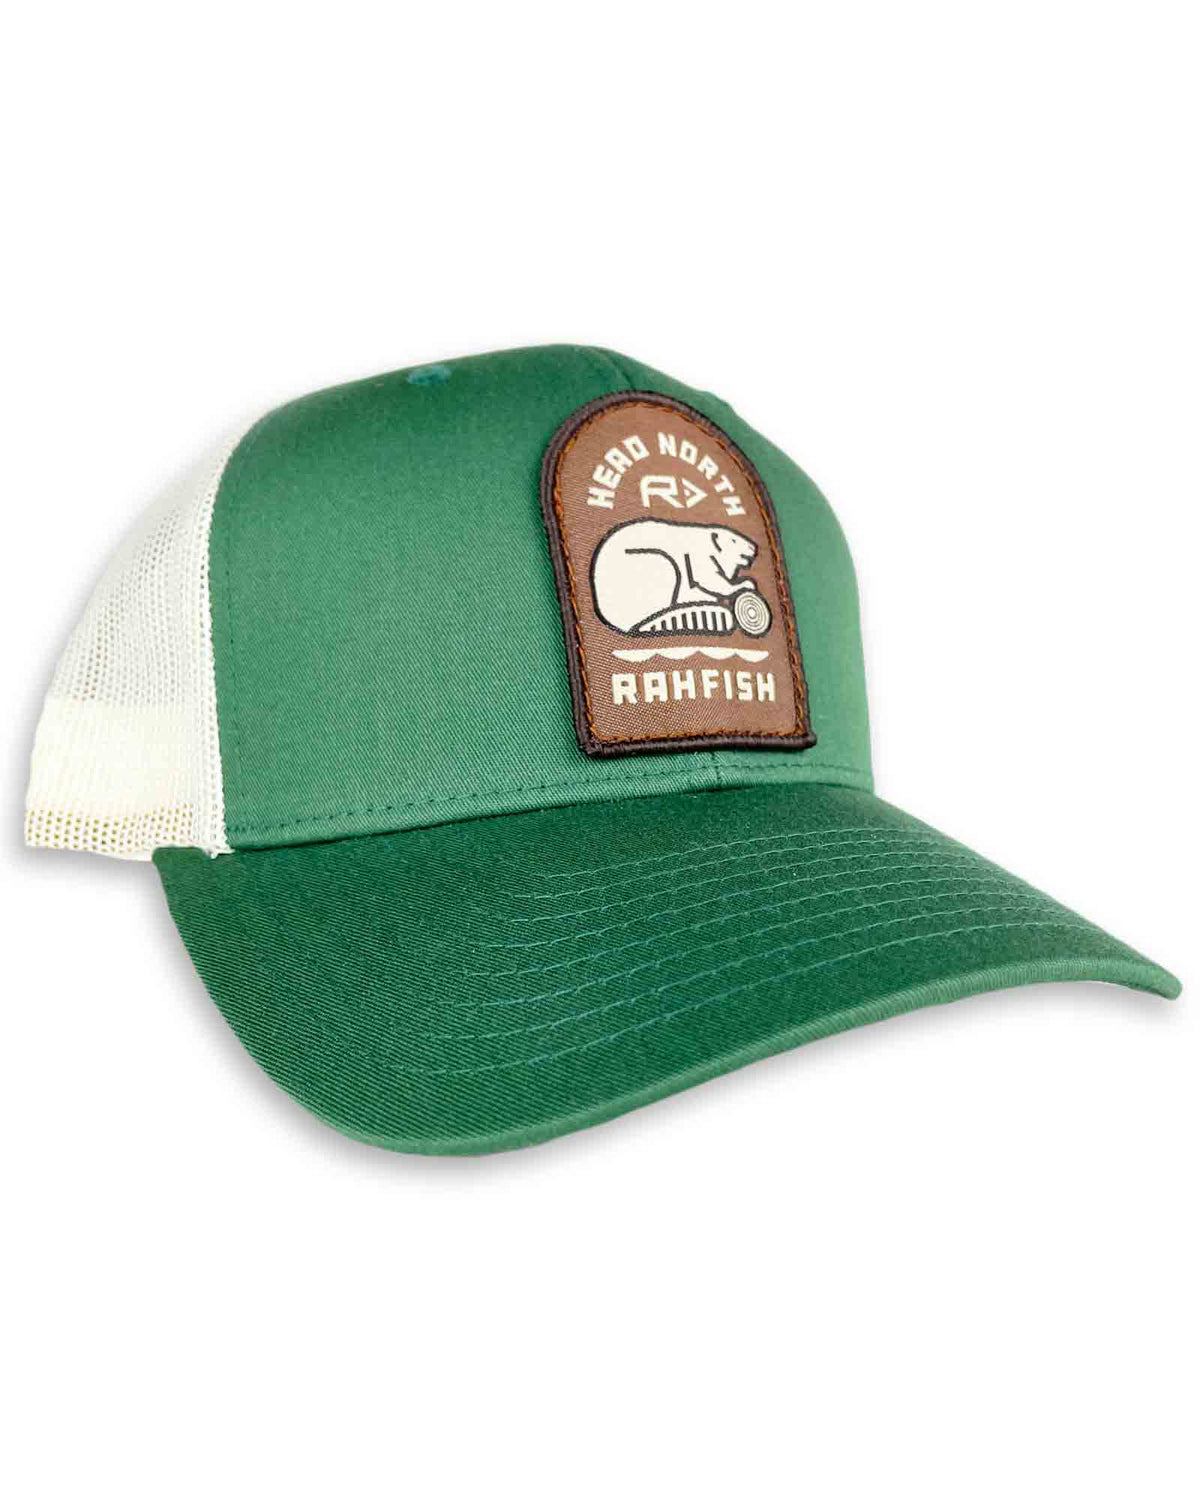 Rahfish Northern Beaver Trucker Hat - Green